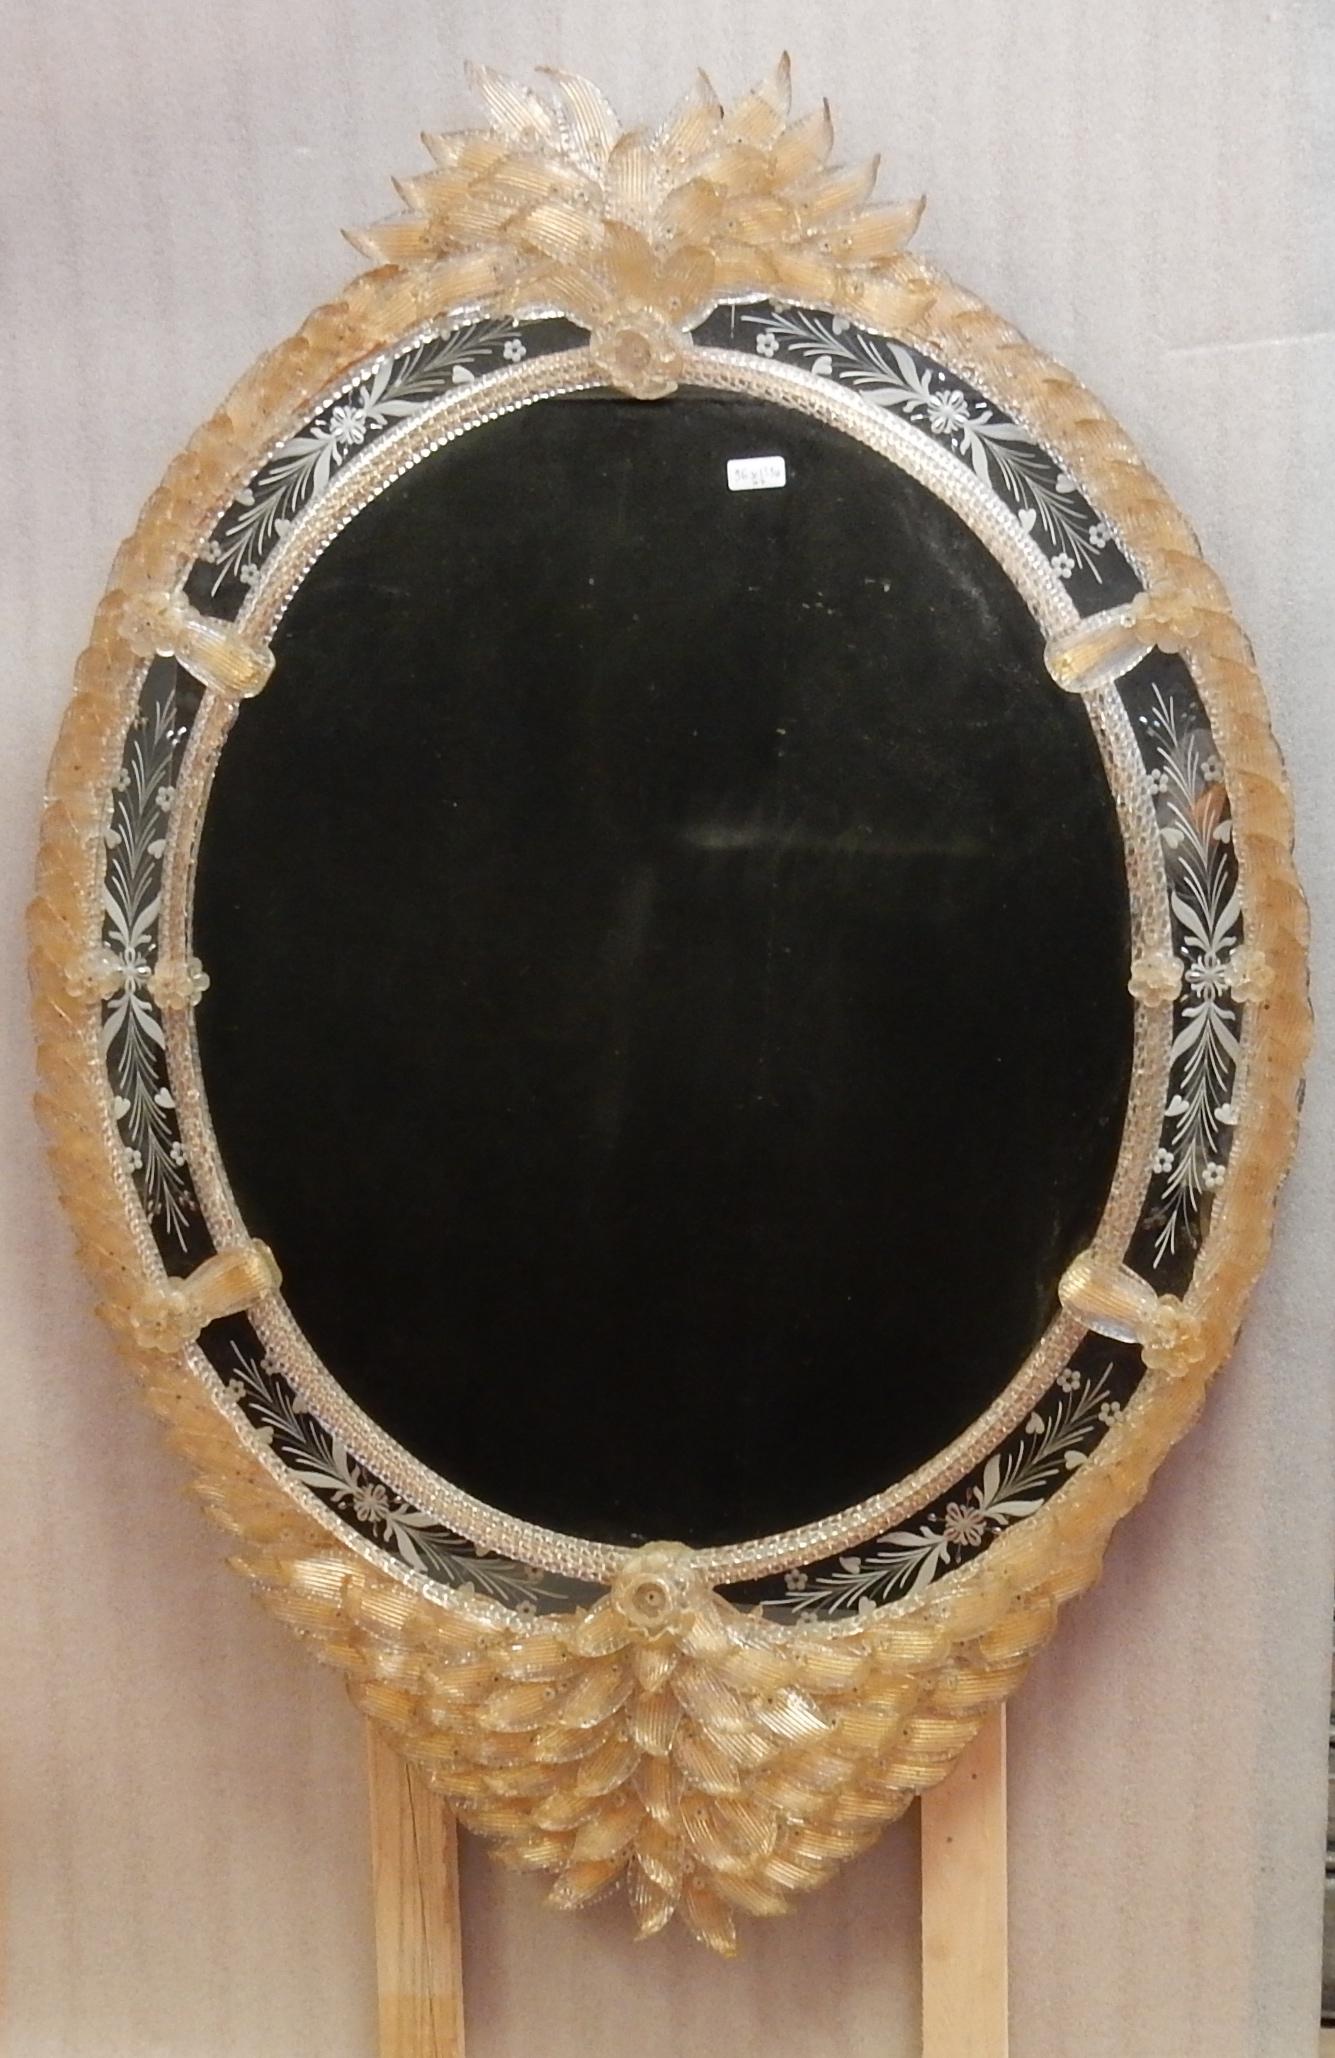 Cristal miroir avec inclusions d'or, feuilles et fleurs, bon état, vers 1970/80

Mesures : Largeur : 96 cm
Hauteur : 135 cm
Profondeur : 7 cm.